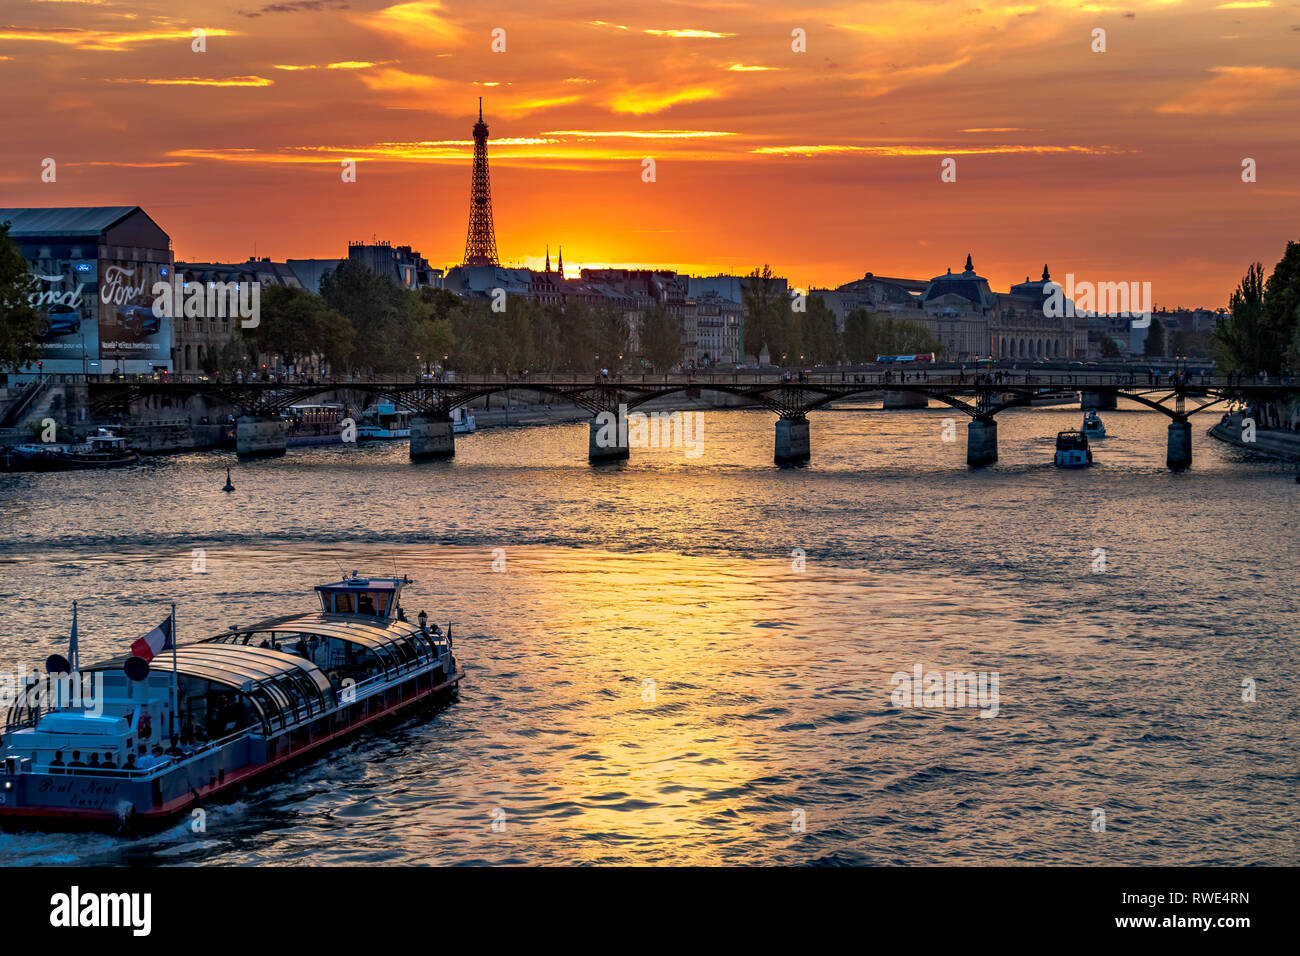 Paris und die seine, die bei Sonnenuntergang unter der Pont des Art fließt, mit dem Eiffelturm in der Ferne, Paris, Frankreich Stockfoto